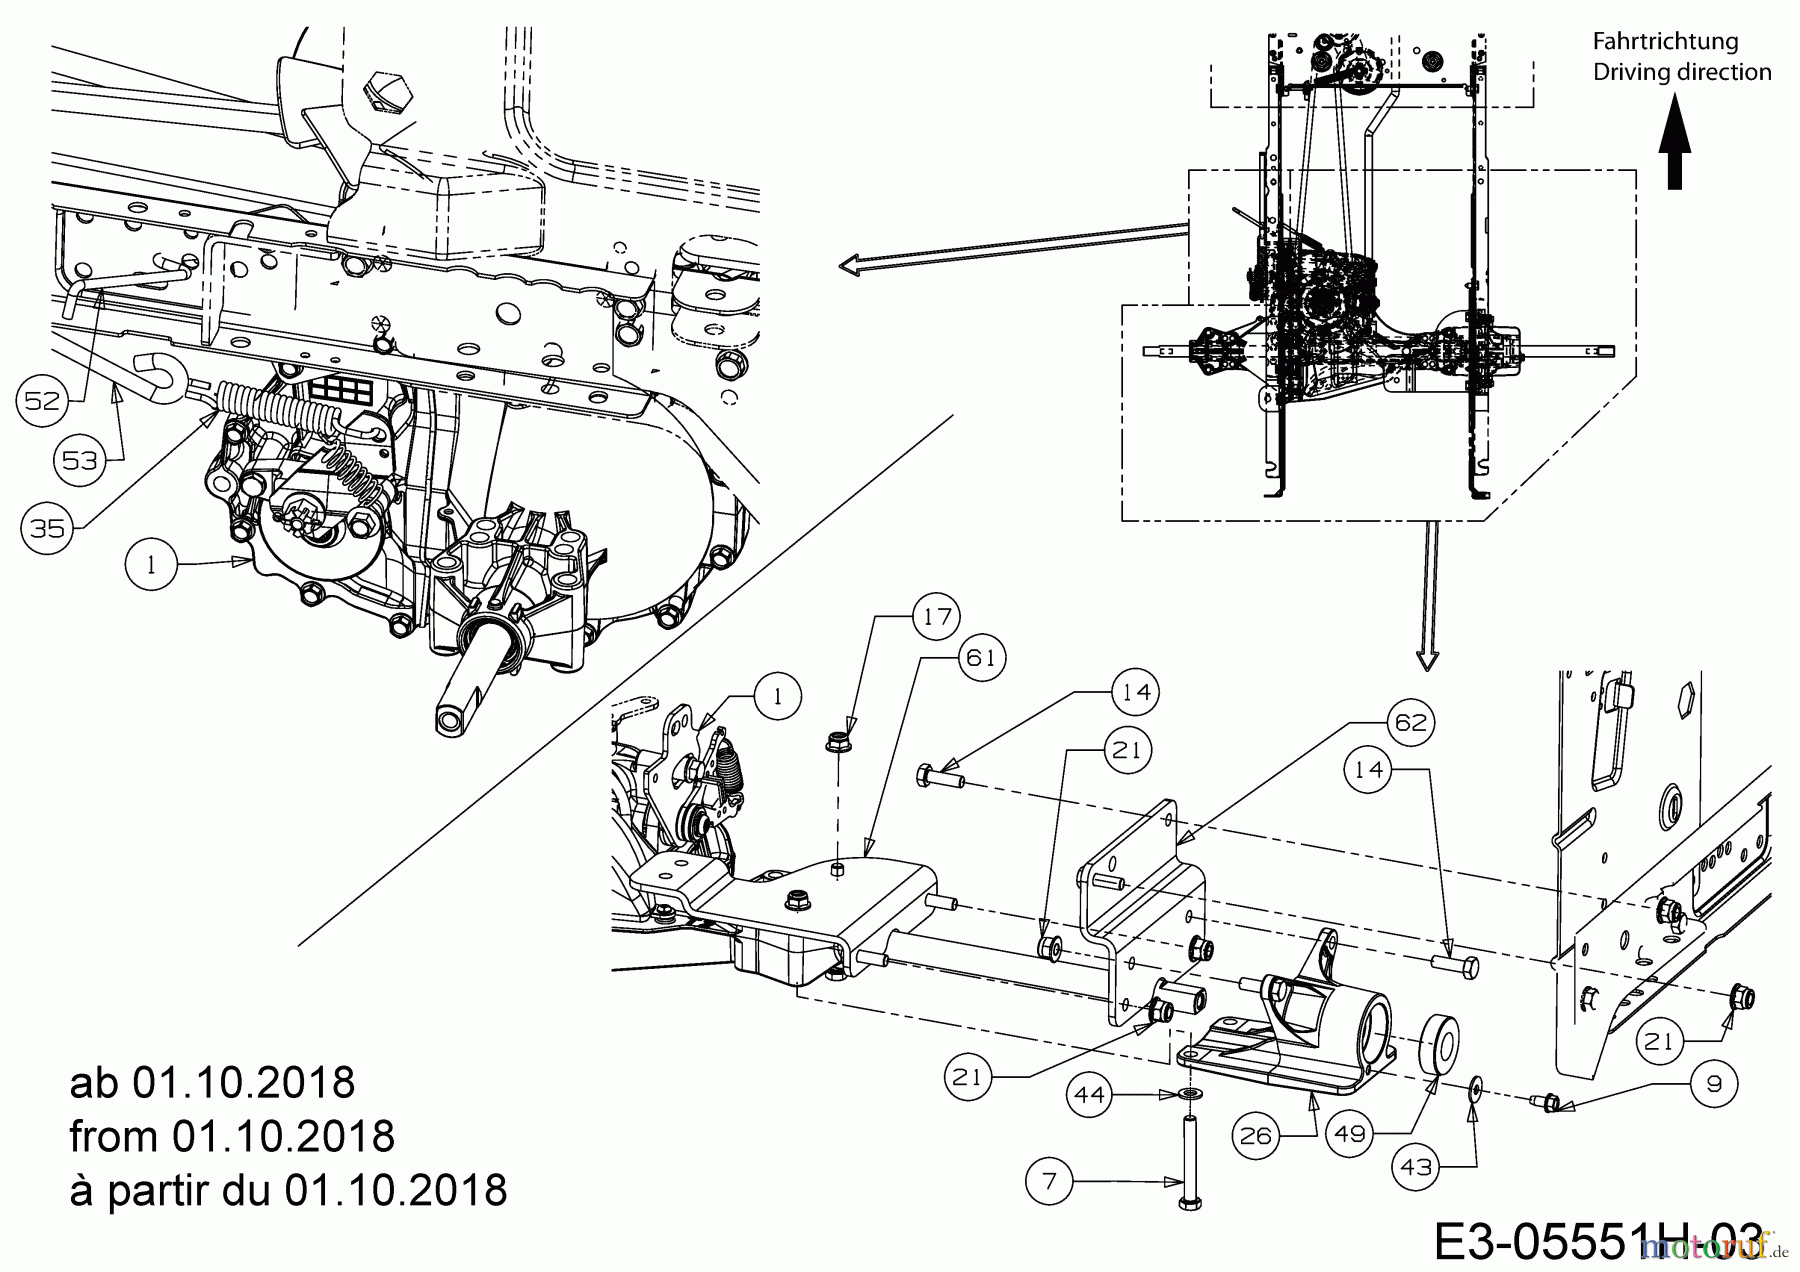  Helington Rasentraktoren H 105 HK 13AG71KN686  (2018) Bremsstange, Bypassstange, Hinterachshalter rechts ab 01.10.2018